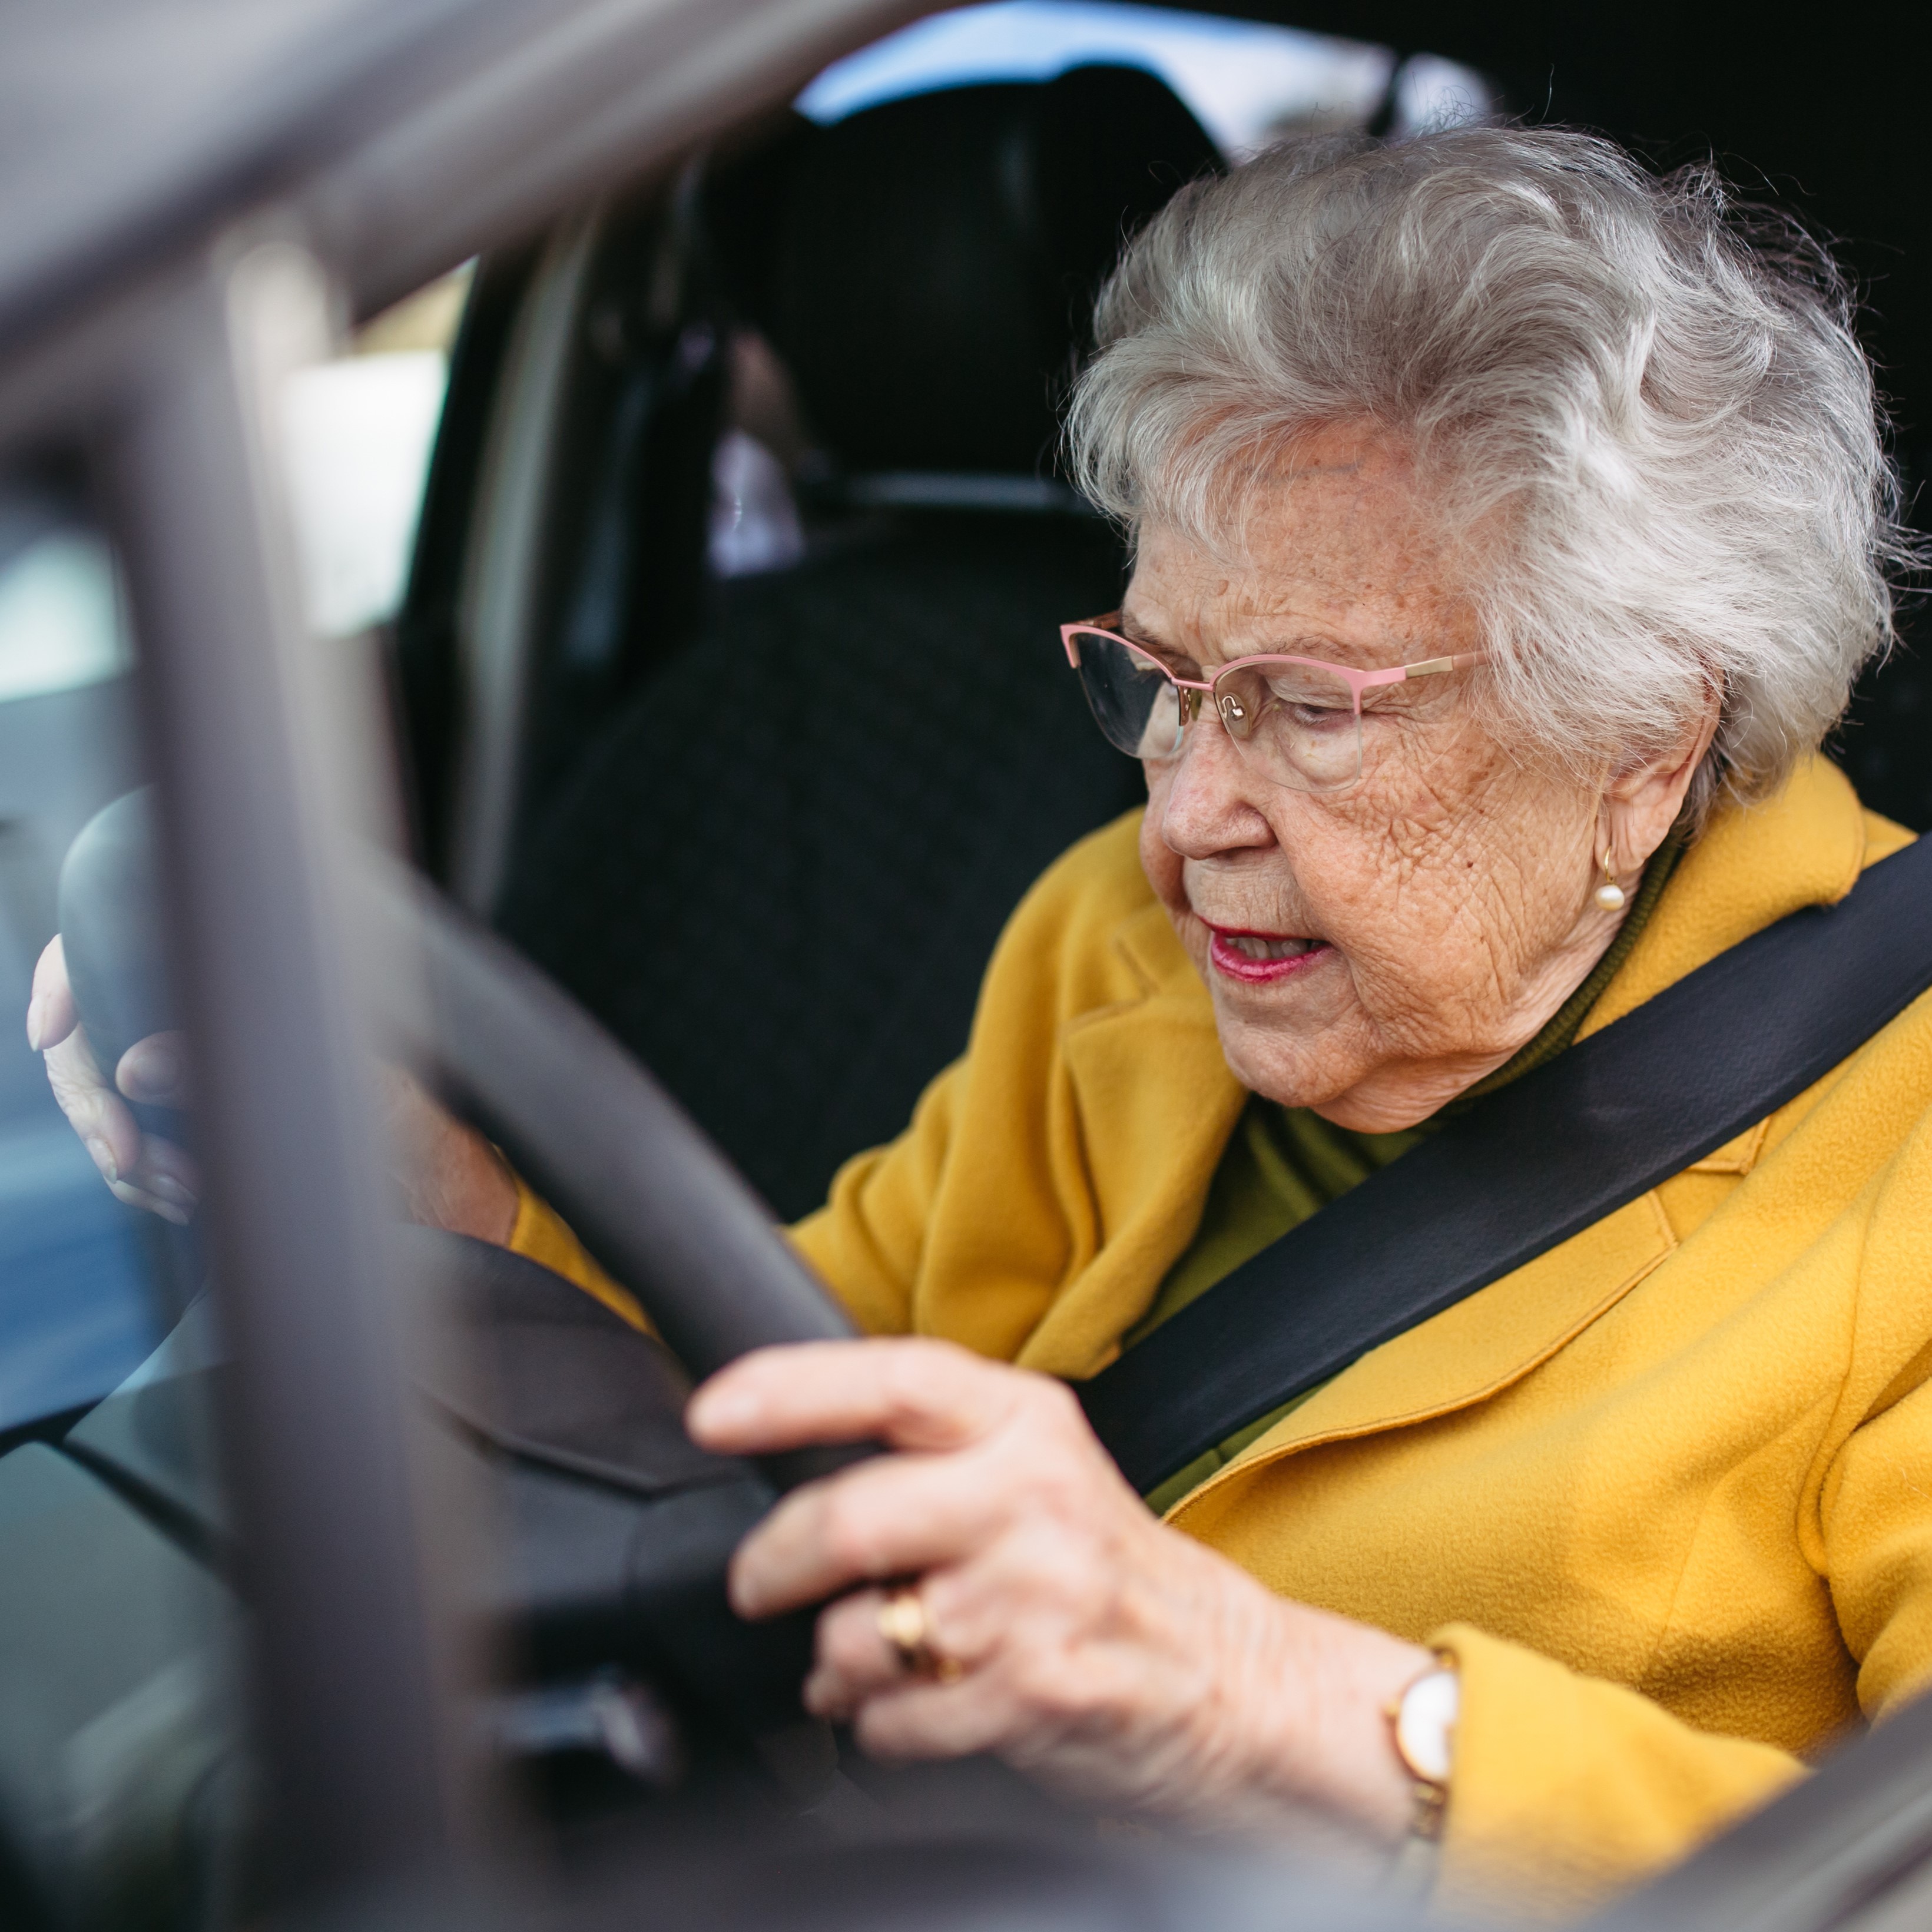 Older Driver Safety Awareness Week Kicks Off